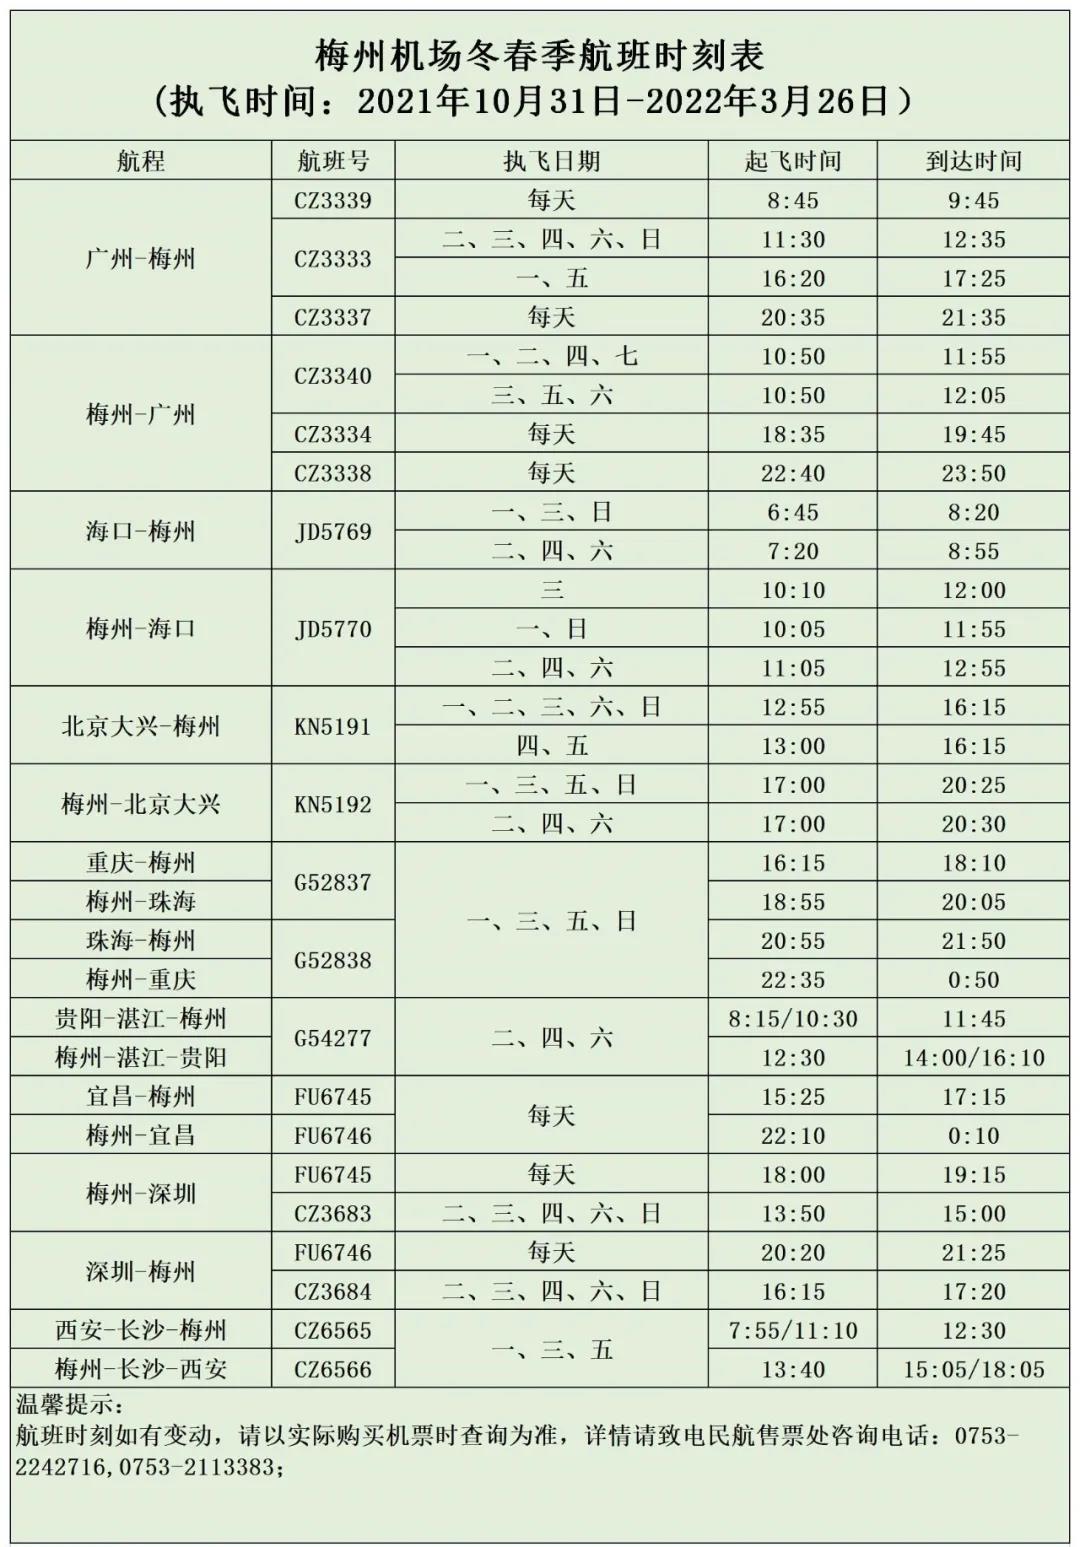 深圳空管站助力深圳机场航班量回升突破900架次 - 民用航空网